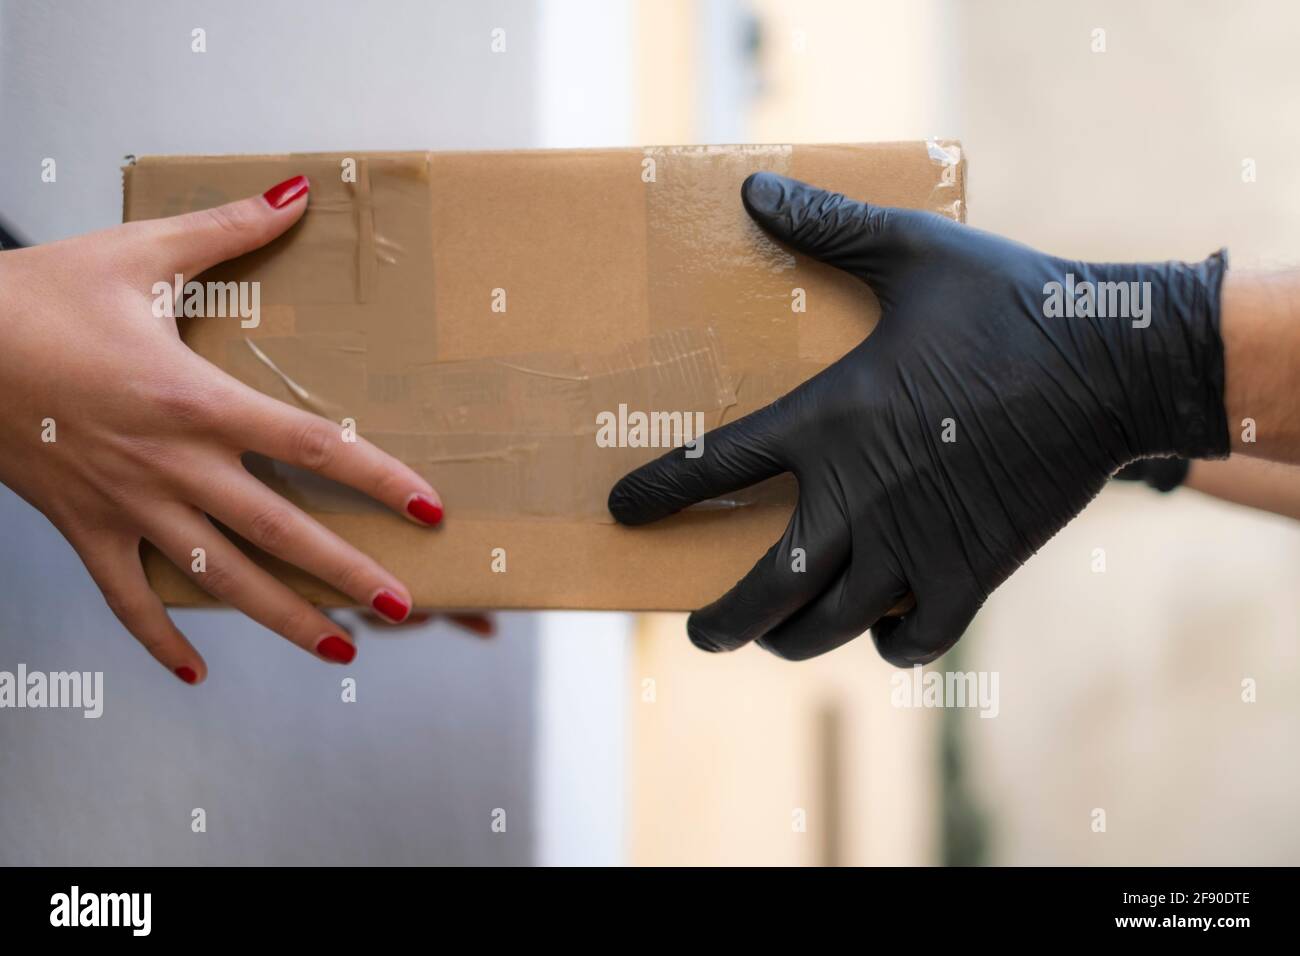 La femme reçoit à la maison le paquet d'expédition des hommes de livraison, commerce électronique acheter Banque D'Images